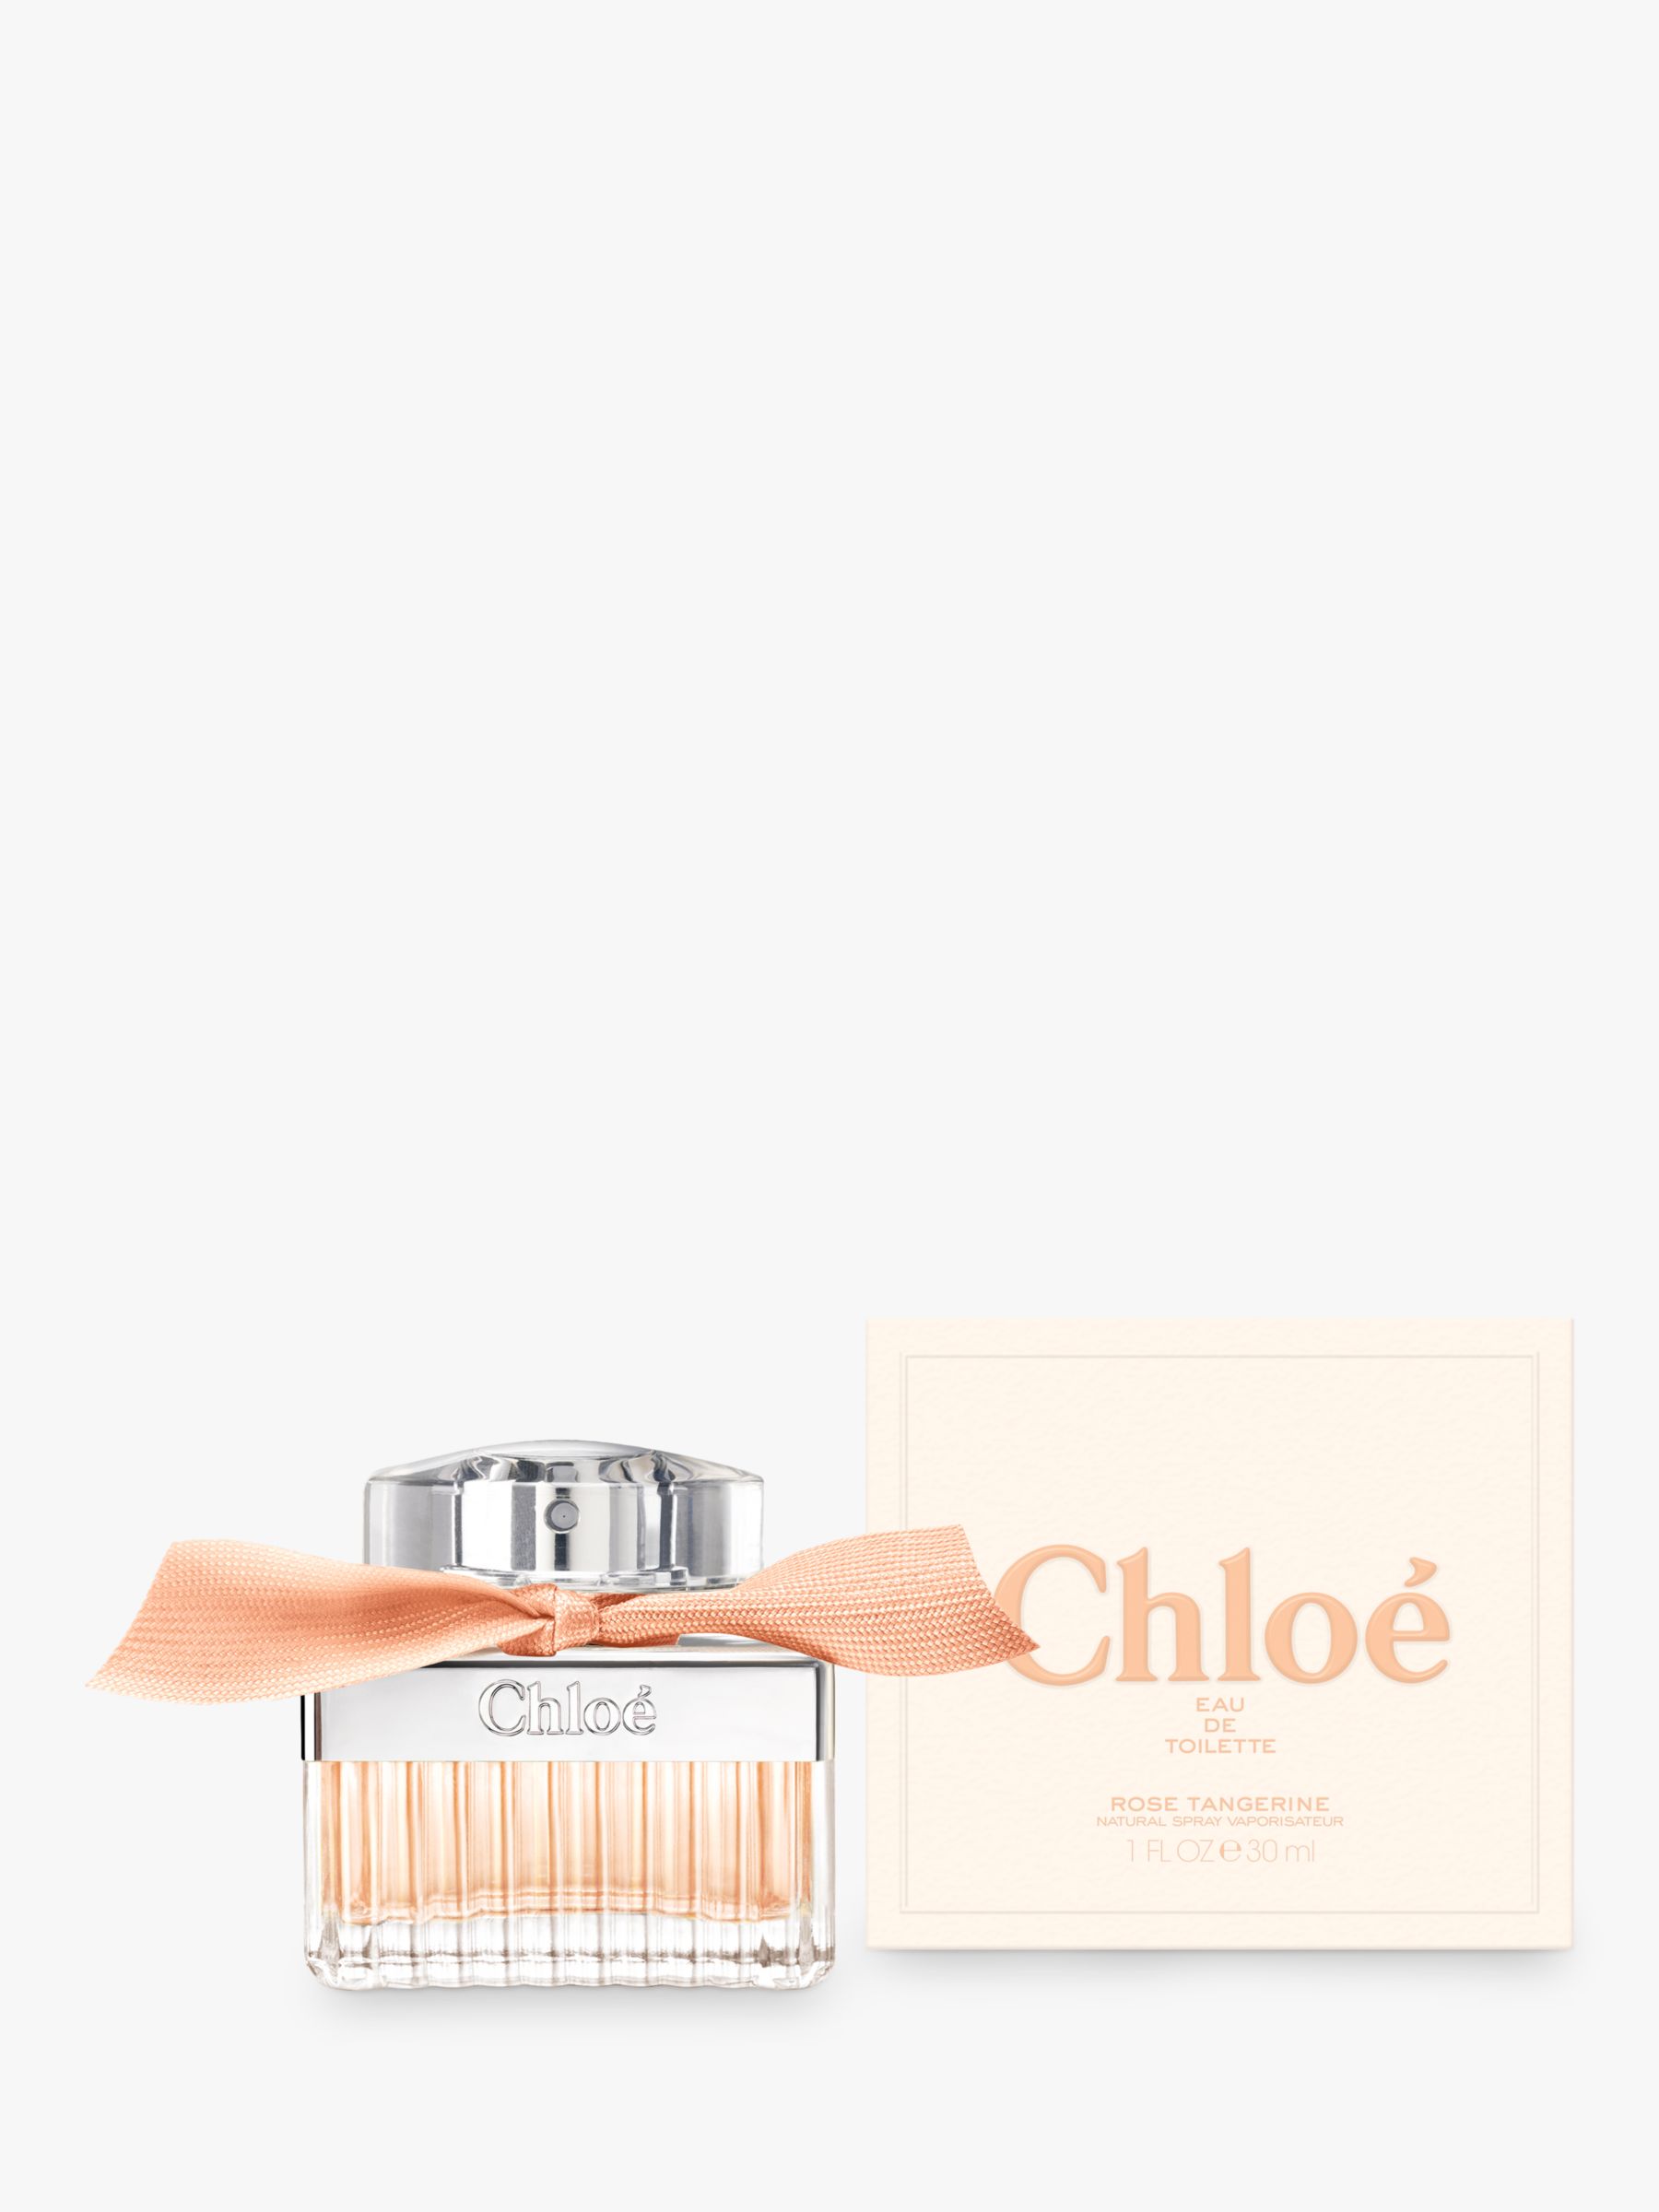 Chloé Rose Tangerine Eau de Toilette, 30ml 2